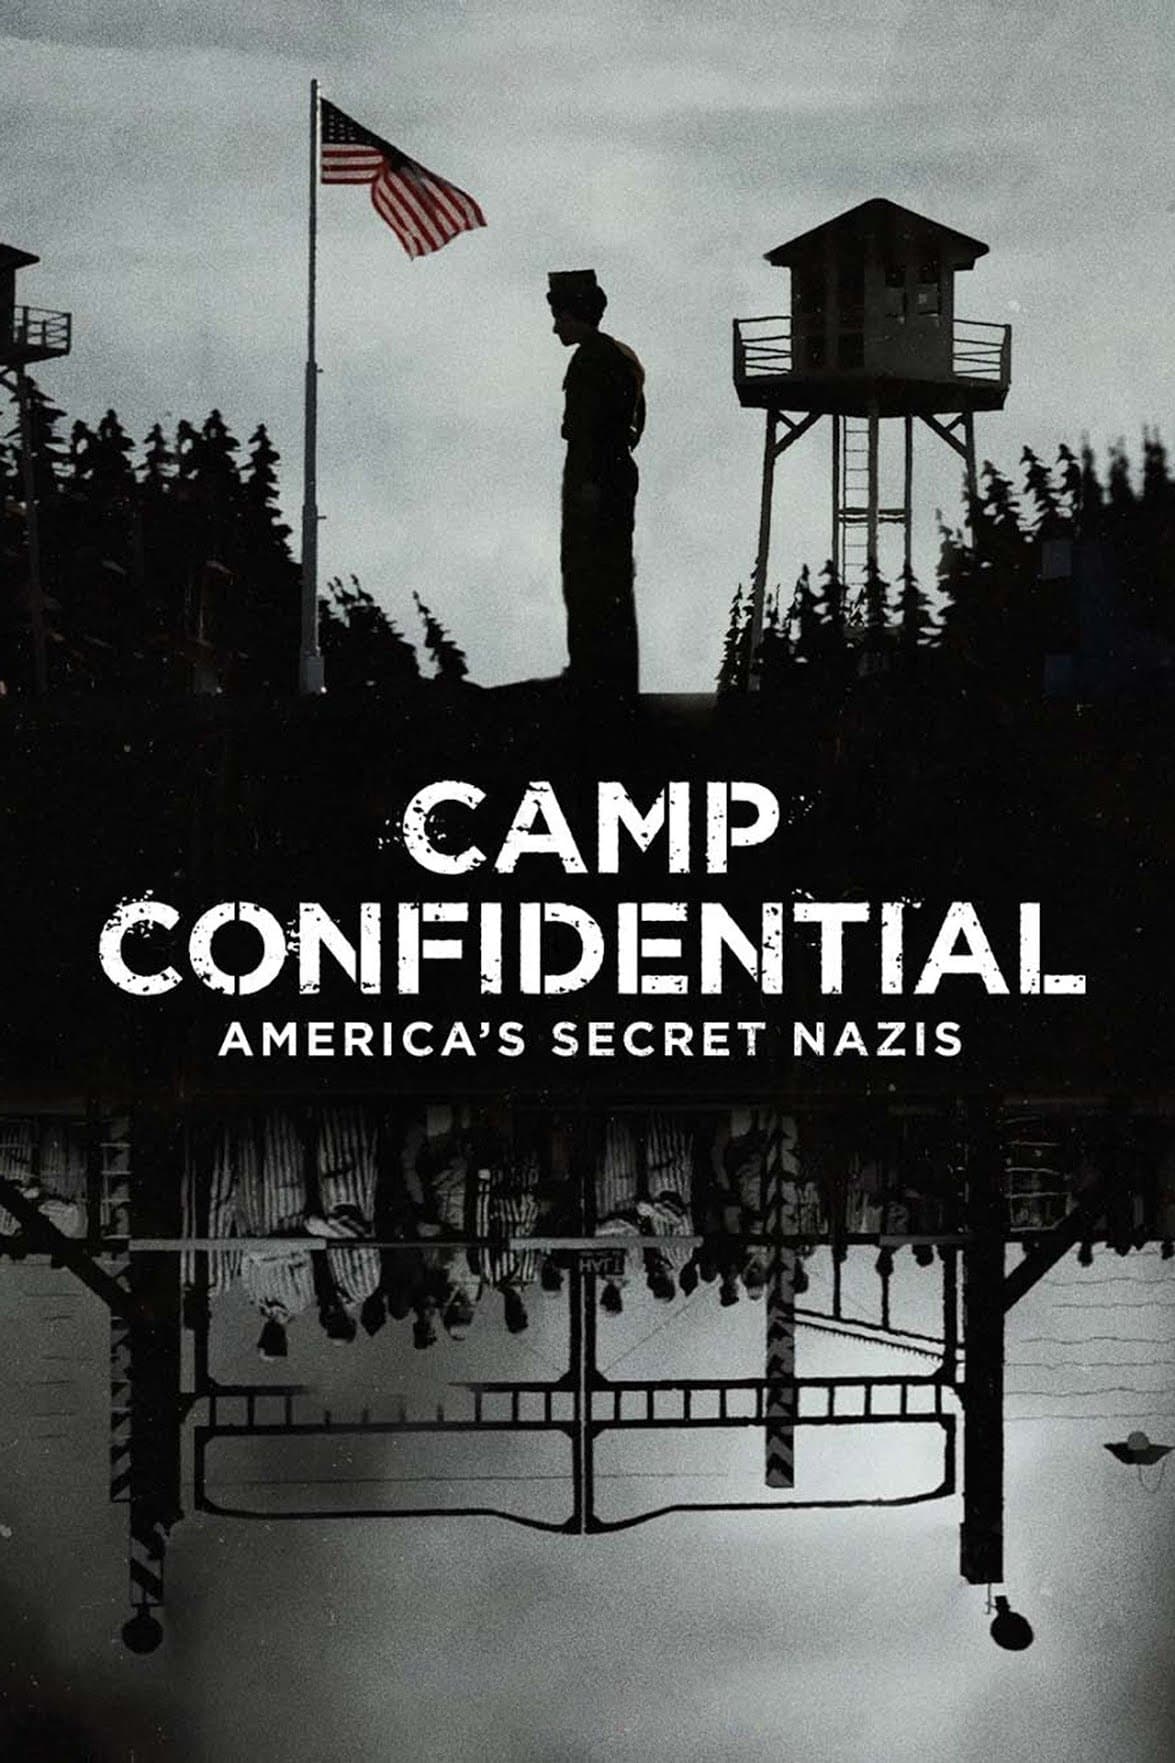 P.O. BOX 1142: Tù nhân Đức Quốc xã ở Mỹ (Camp Confidential: America's Secret Nazis) [2021]